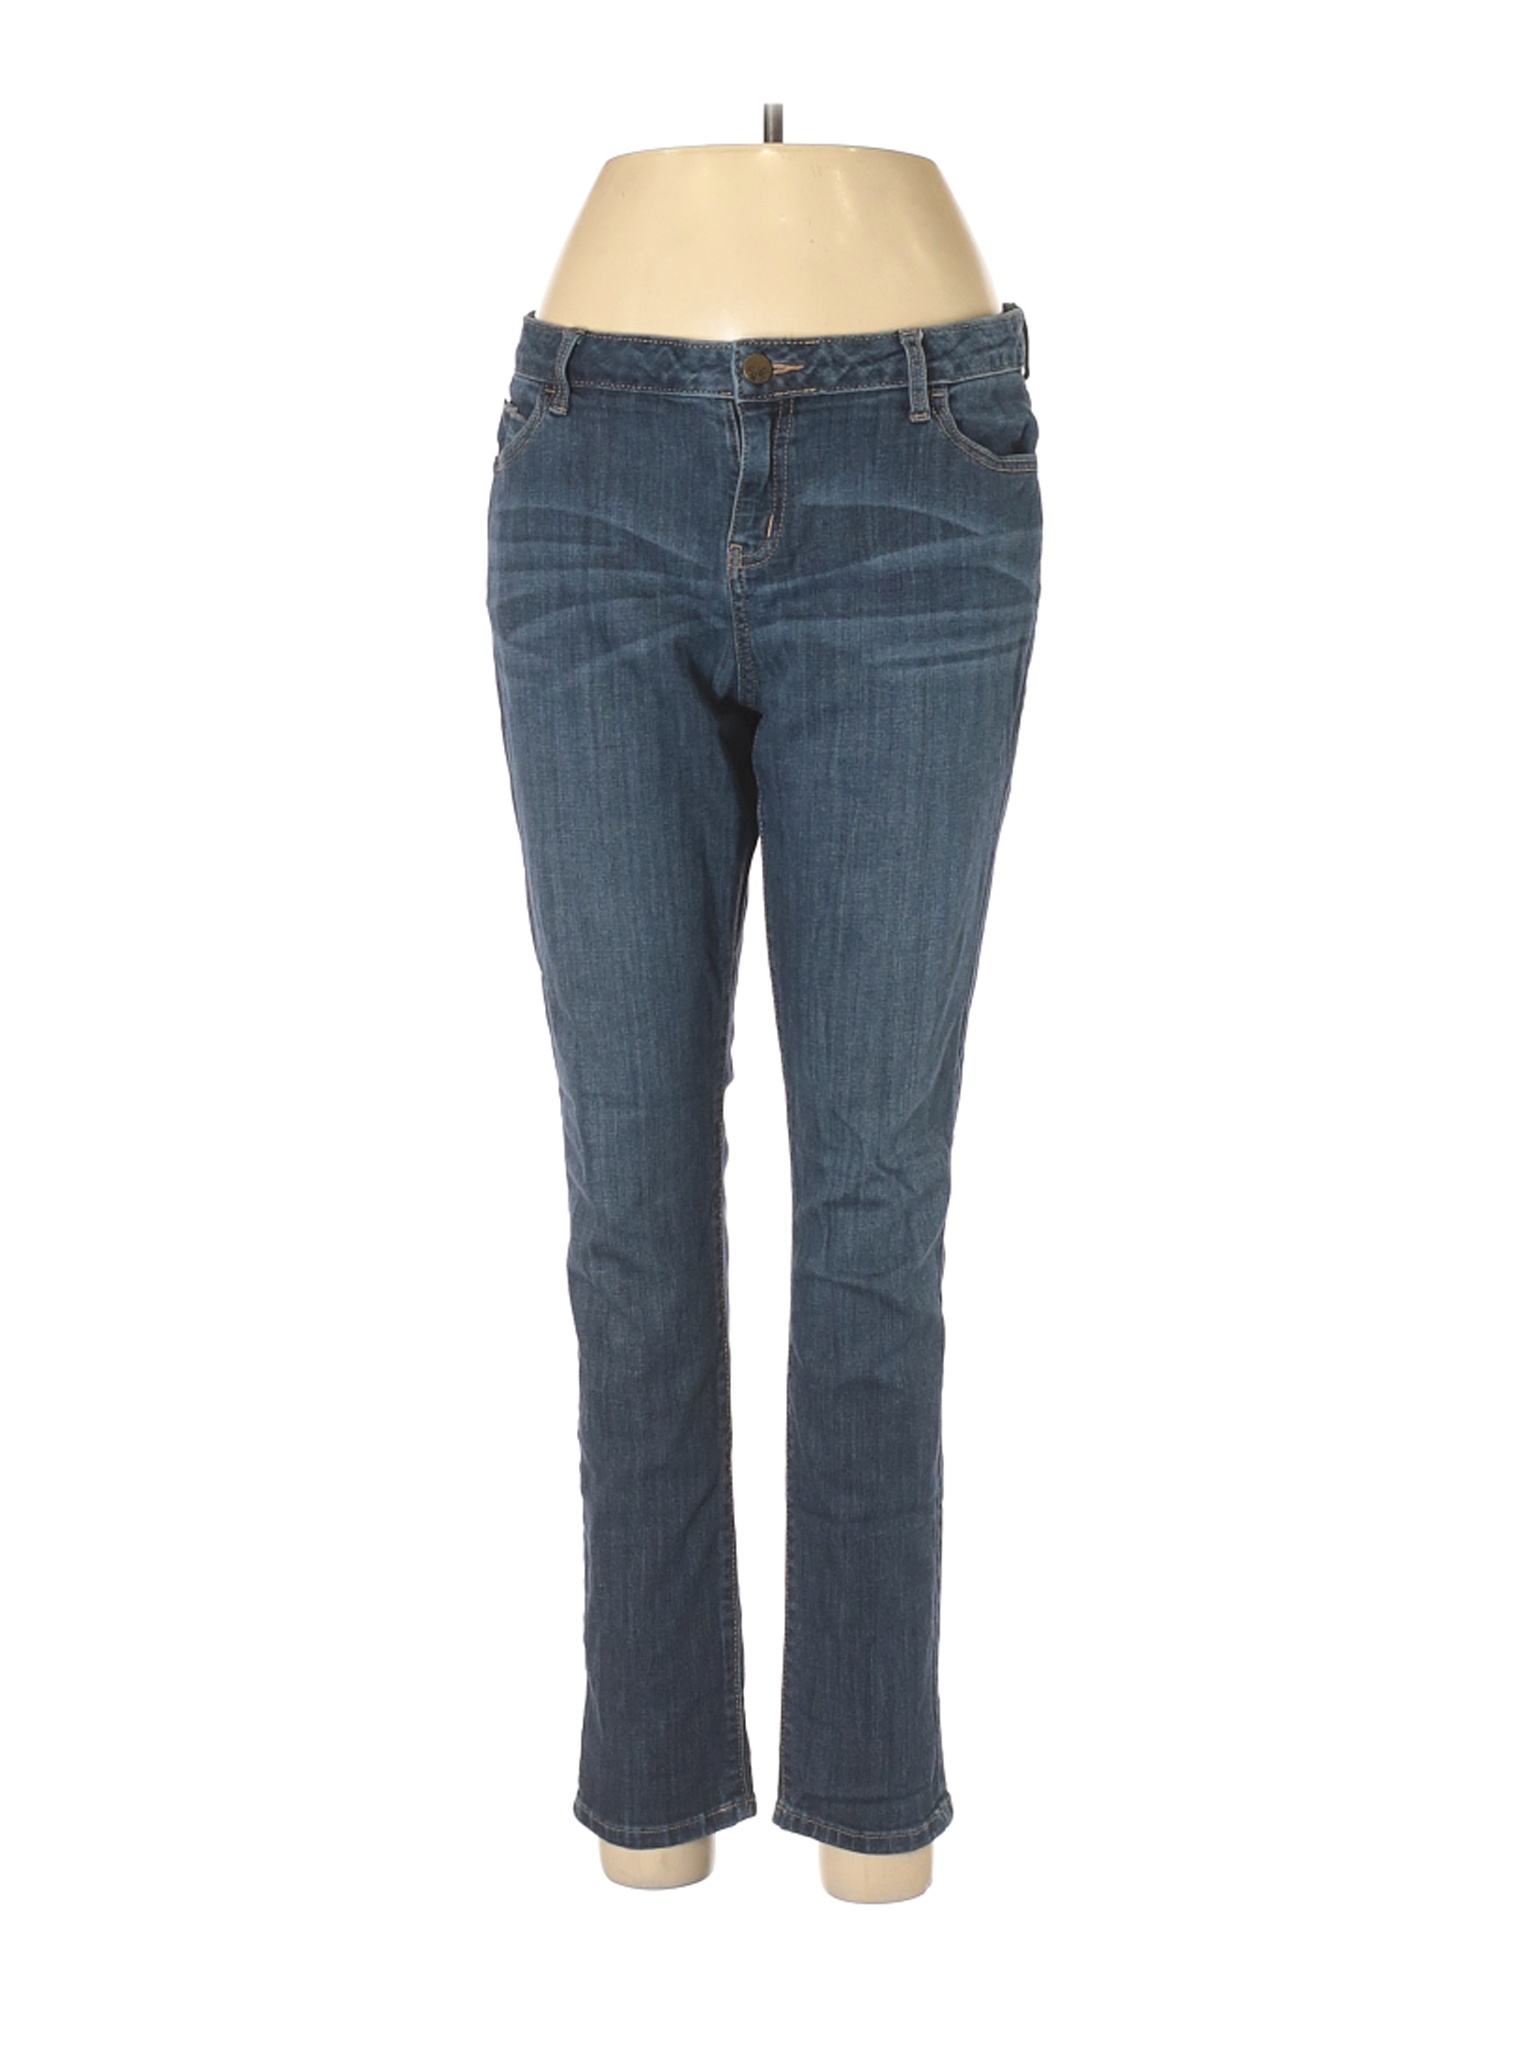 Simply Vera Vera Wang Women Blue Jeans 12 Petites | eBay